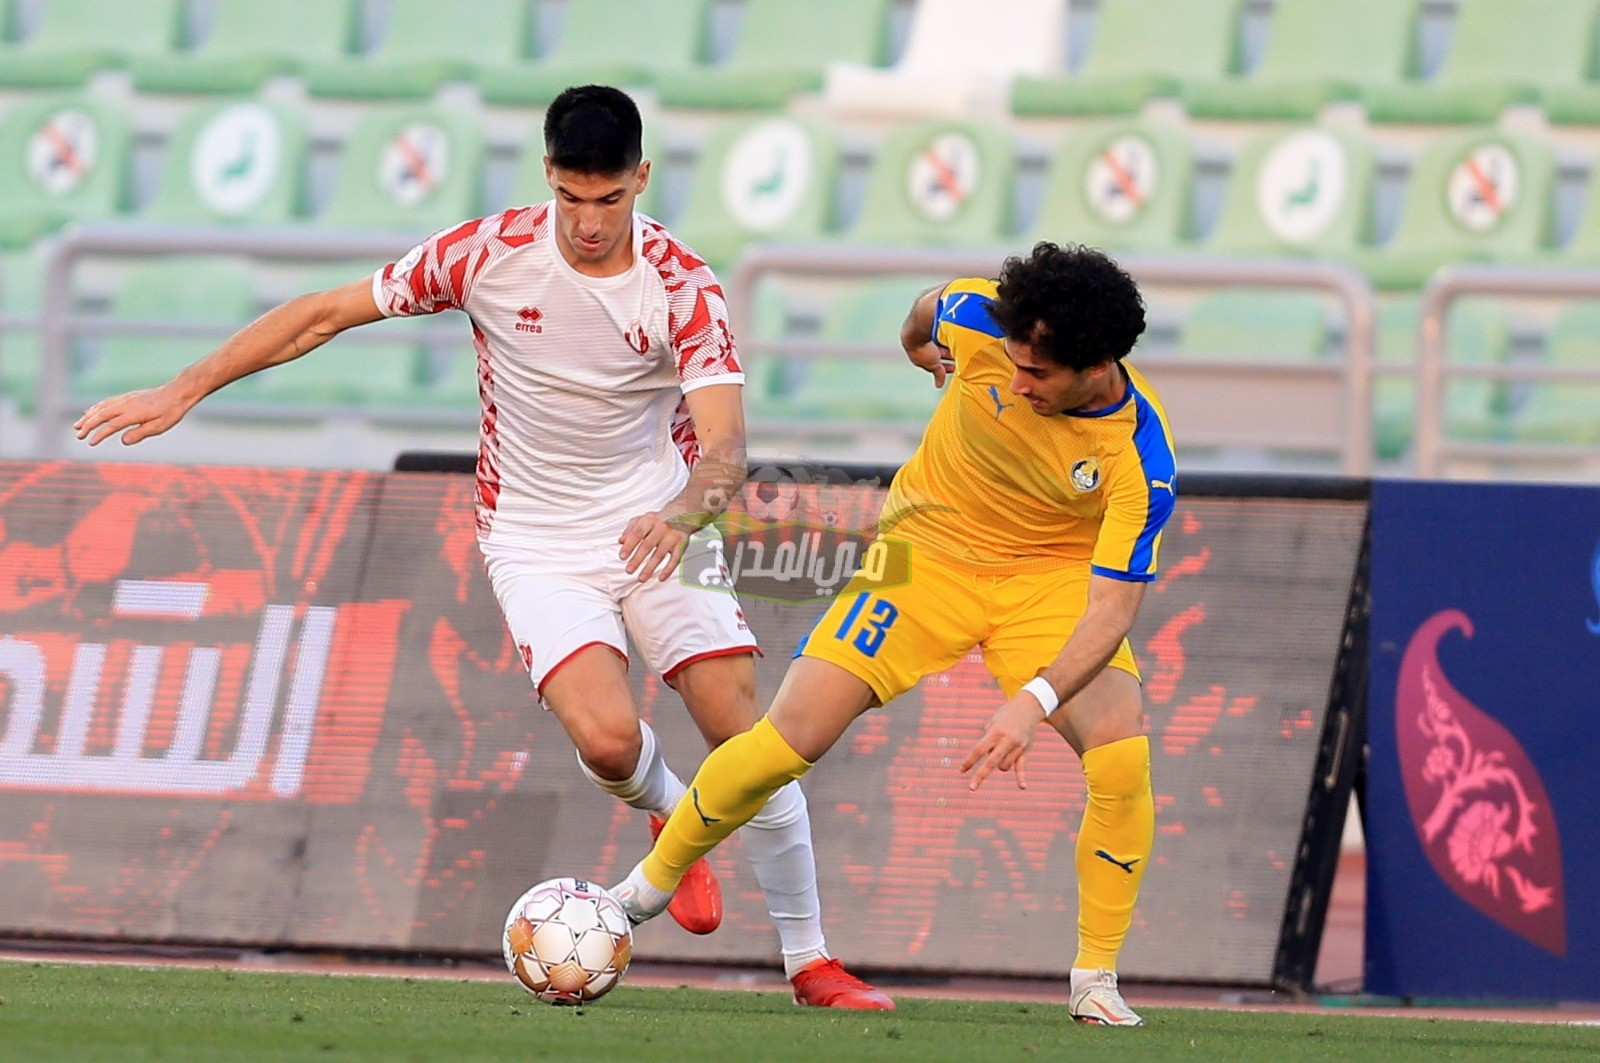 القنوات المفتوحة الناقلة لمباراة الشمال ضد الغرافة Al Shamal vs AlGharafa في الدوري القطري